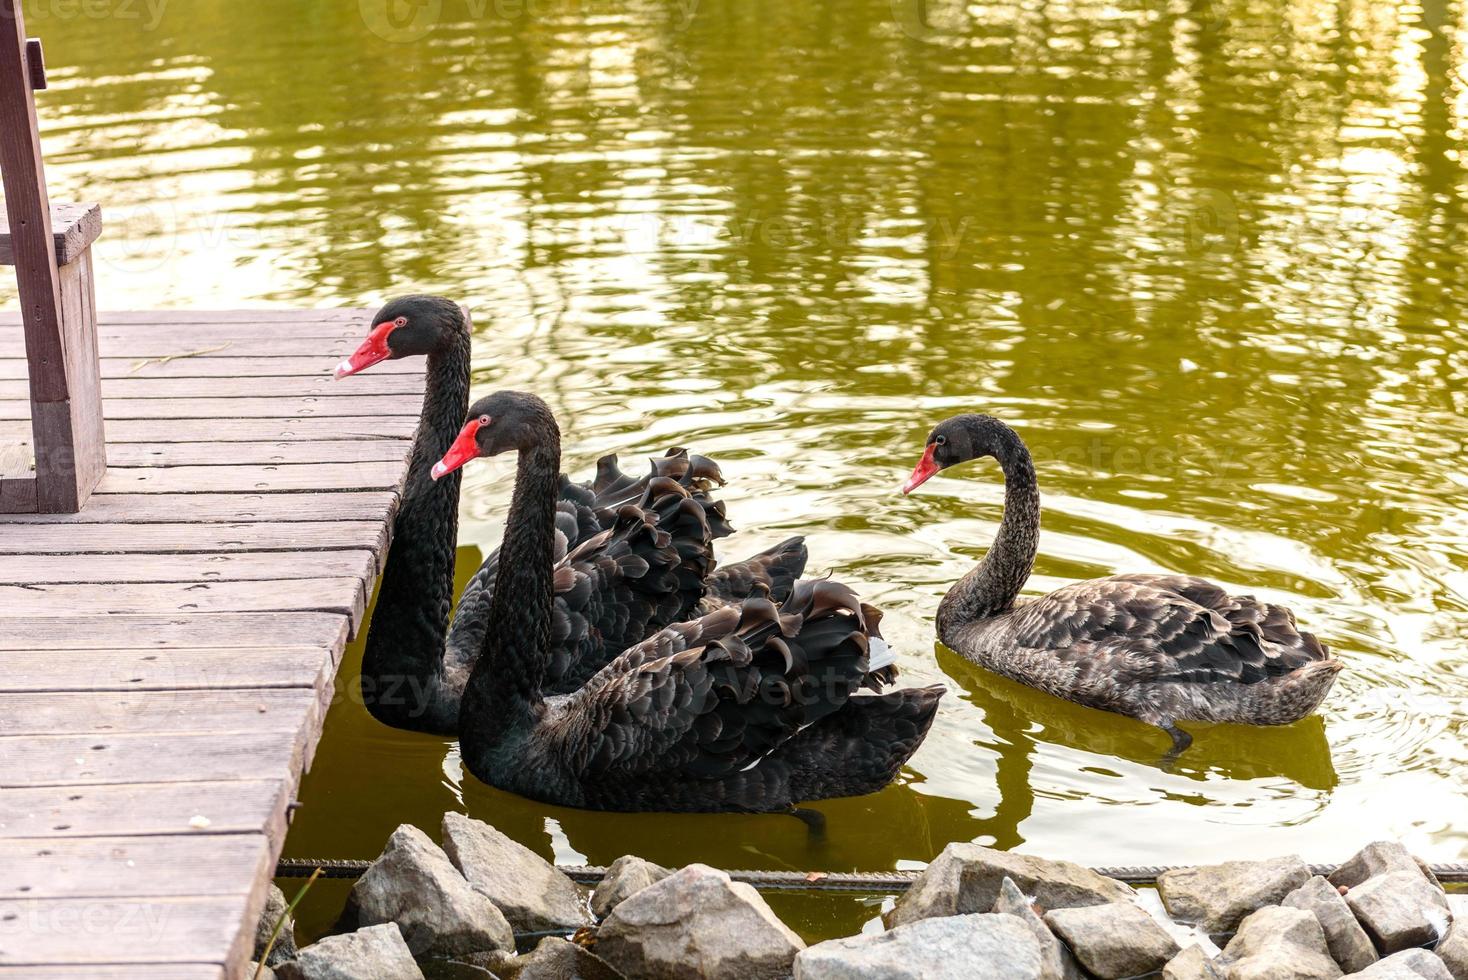 lindos cisnes negros nadando ao longo das margens de um pequeno rio foto